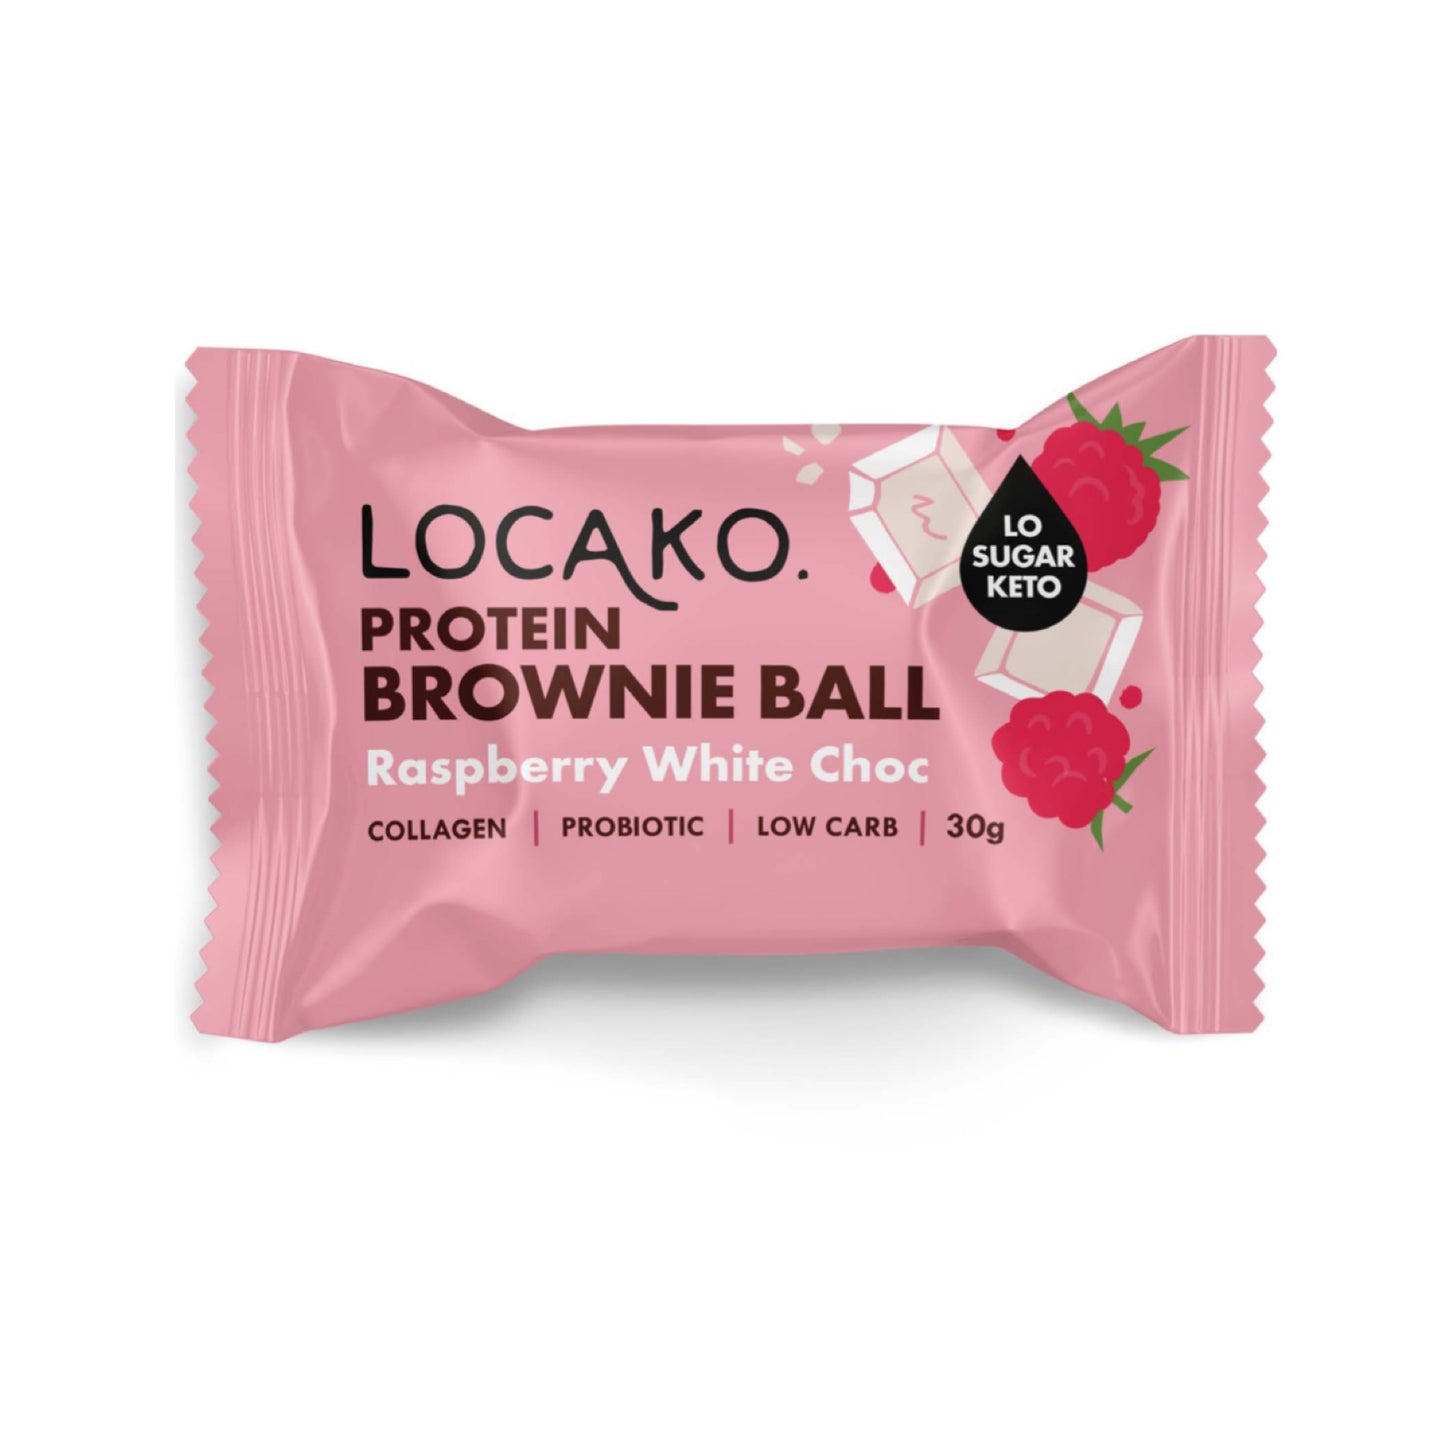 Protein Brownie Balls - Raspberry White Choc - Locako